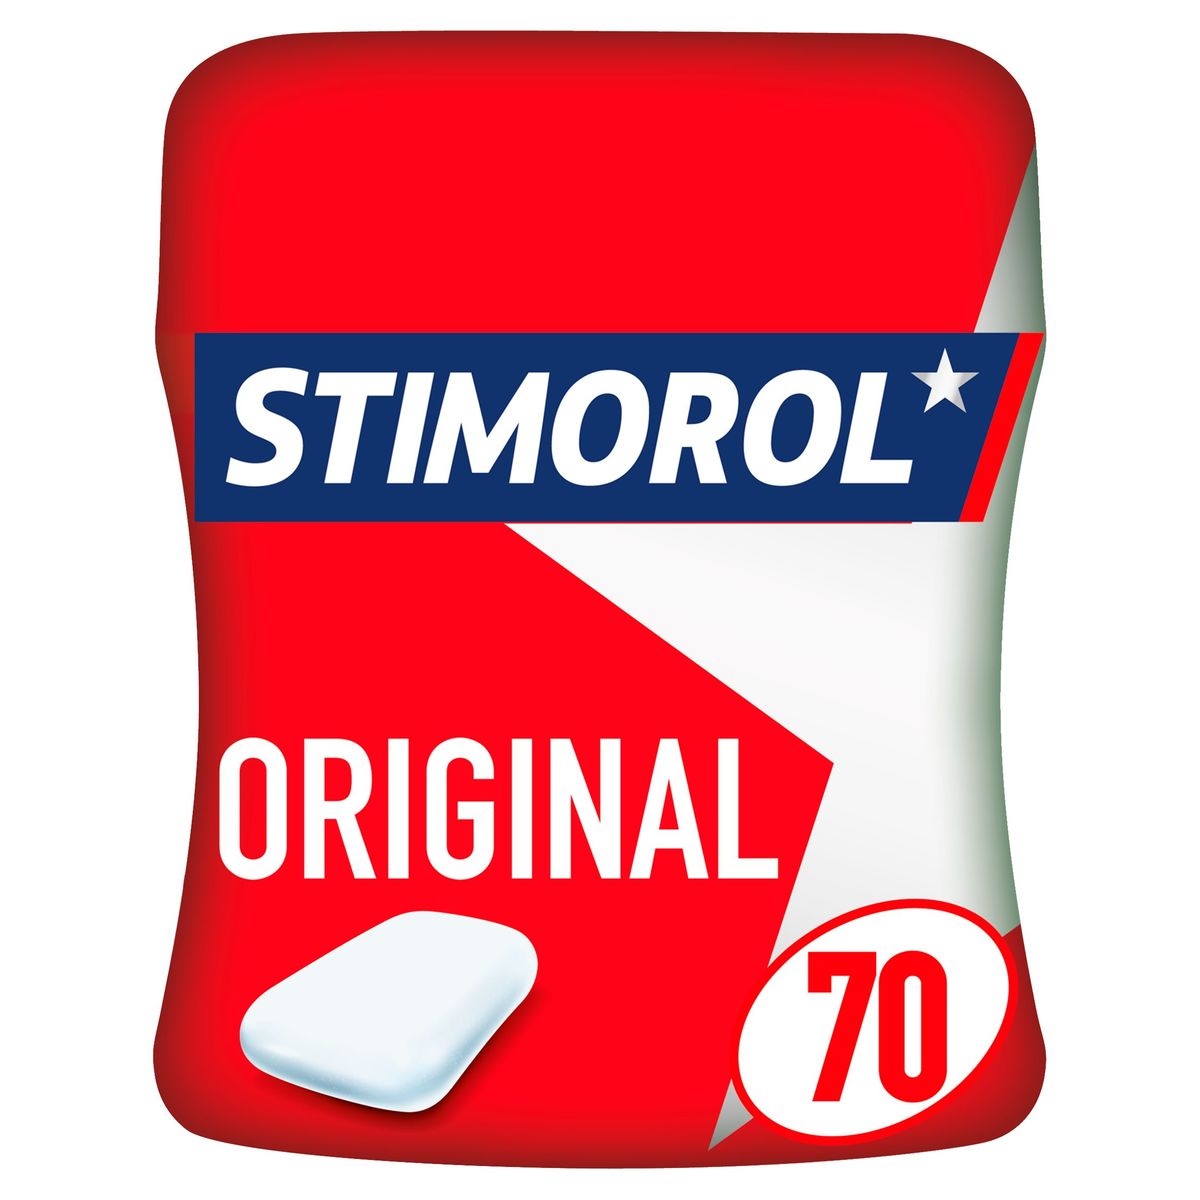 Stimorol Chewing-gum Original Sans Sucre Pot 70 Pcs